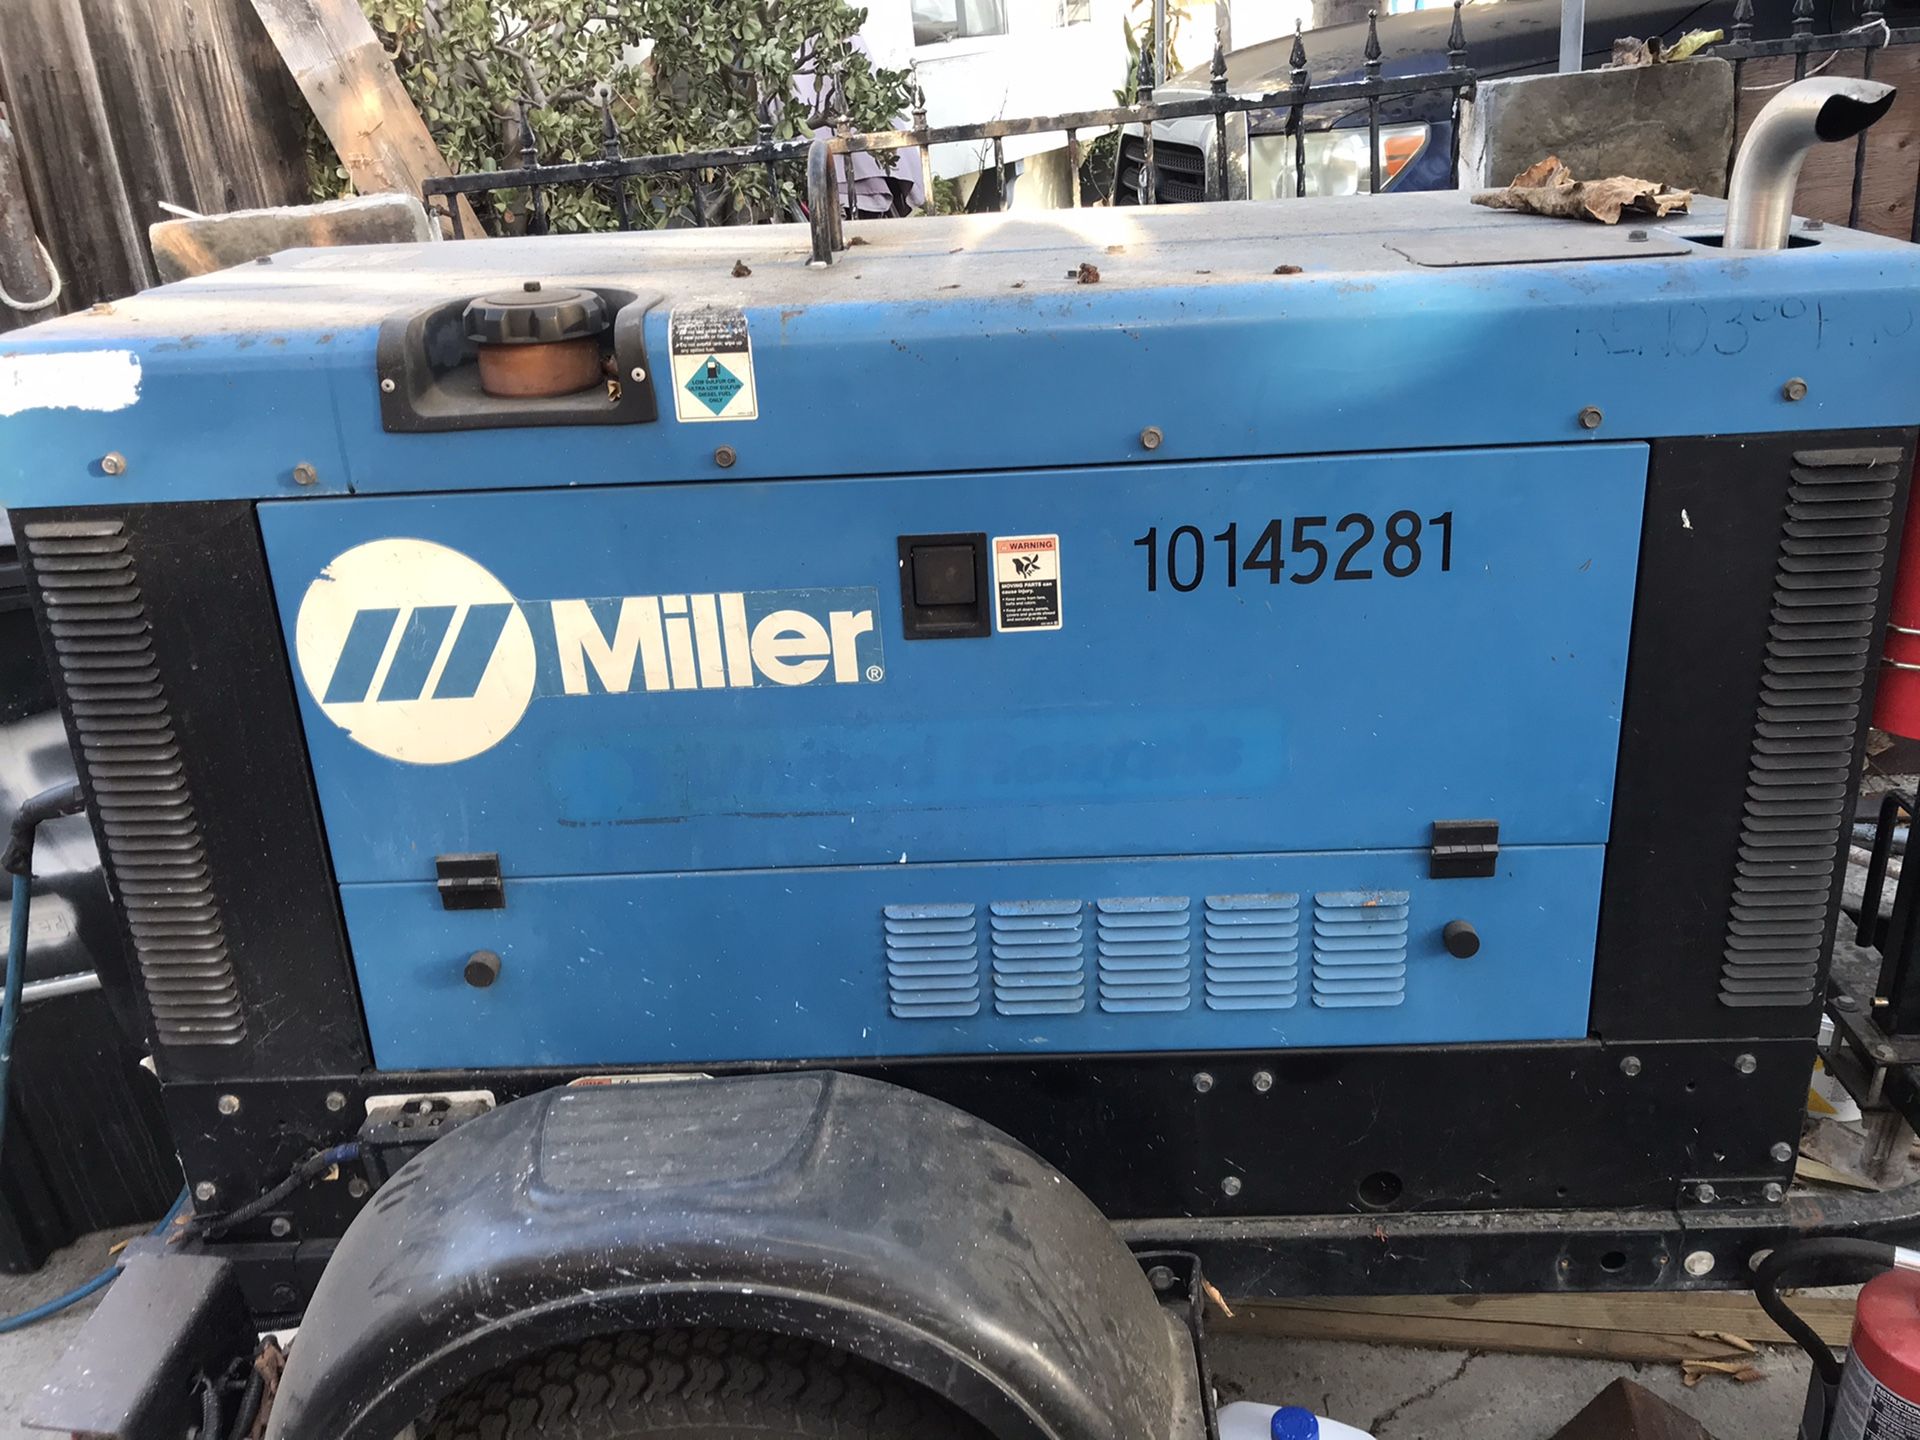 Big Blue 300 Miller Welder With Trailer (Diesel)